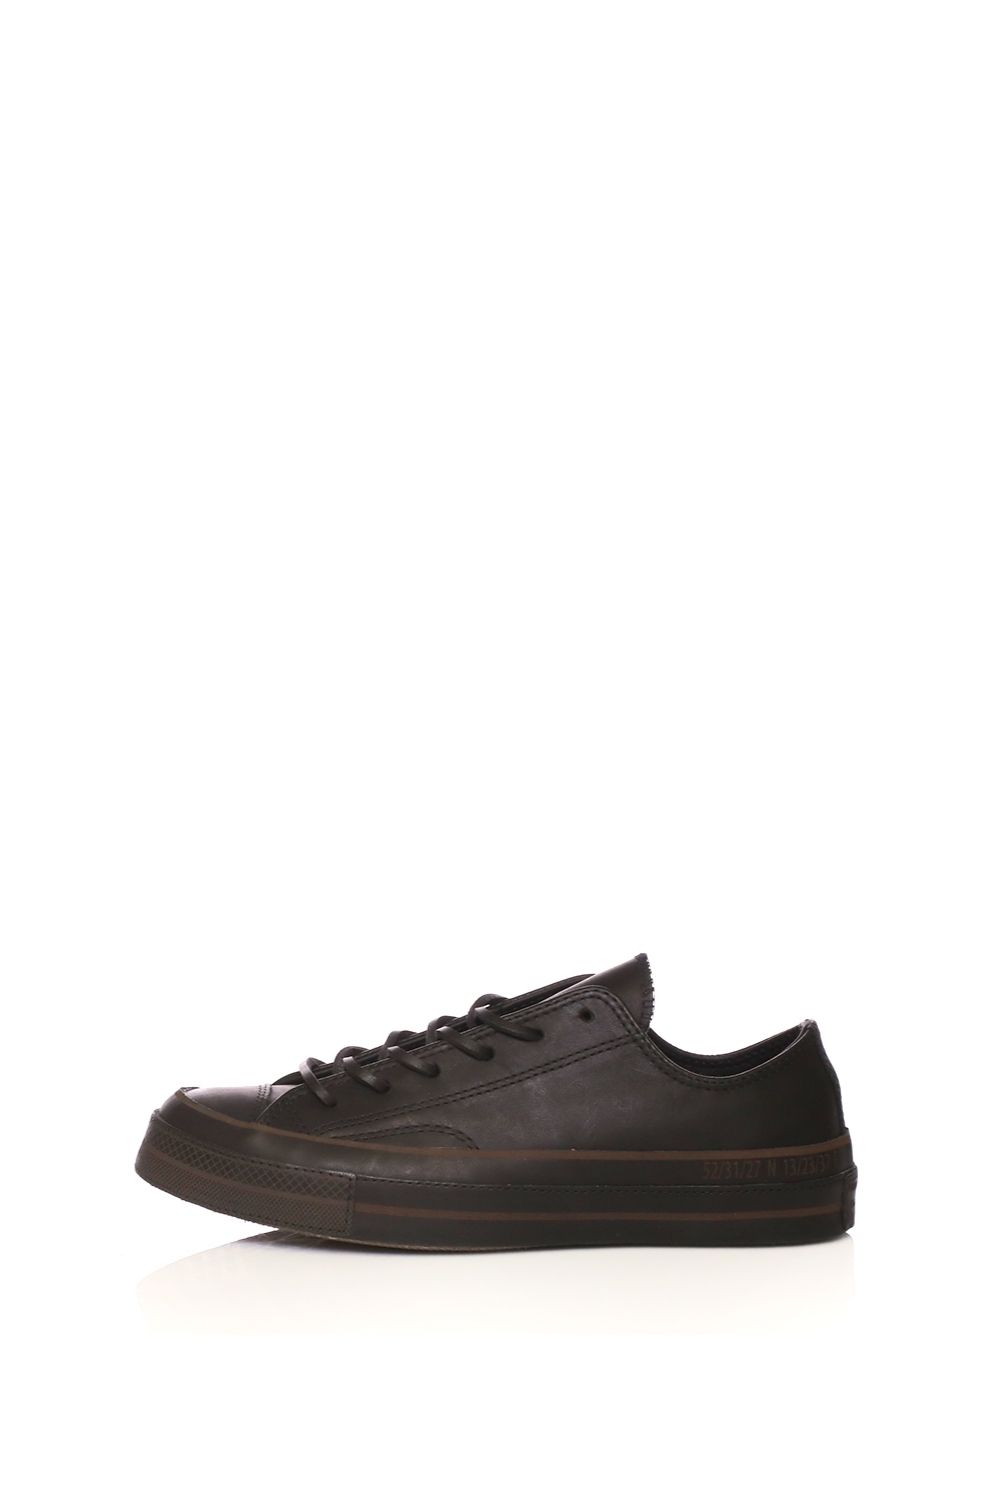 CONVERSE - Unisex παπούτσια CONVERSE QS CTAS '70 BRUTALIST OX καφέ Γυναικεία/Παπούτσια/Sneakers